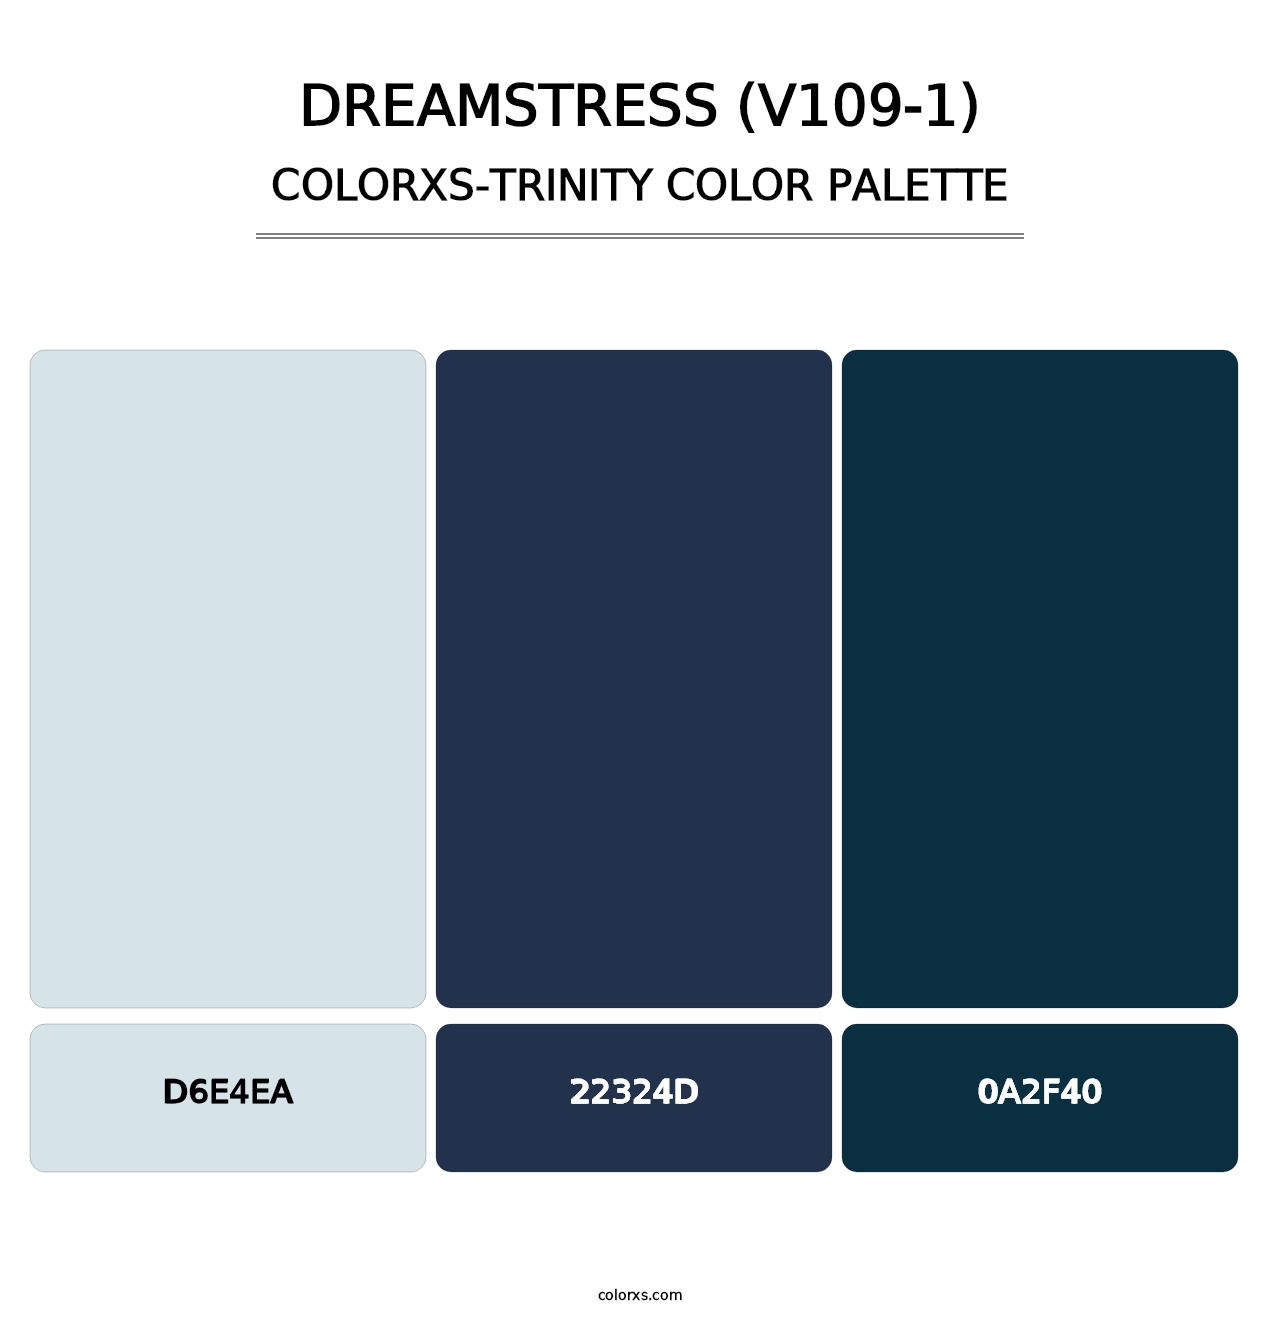 Dreamstress (V109-1) - Colorxs Trinity Palette